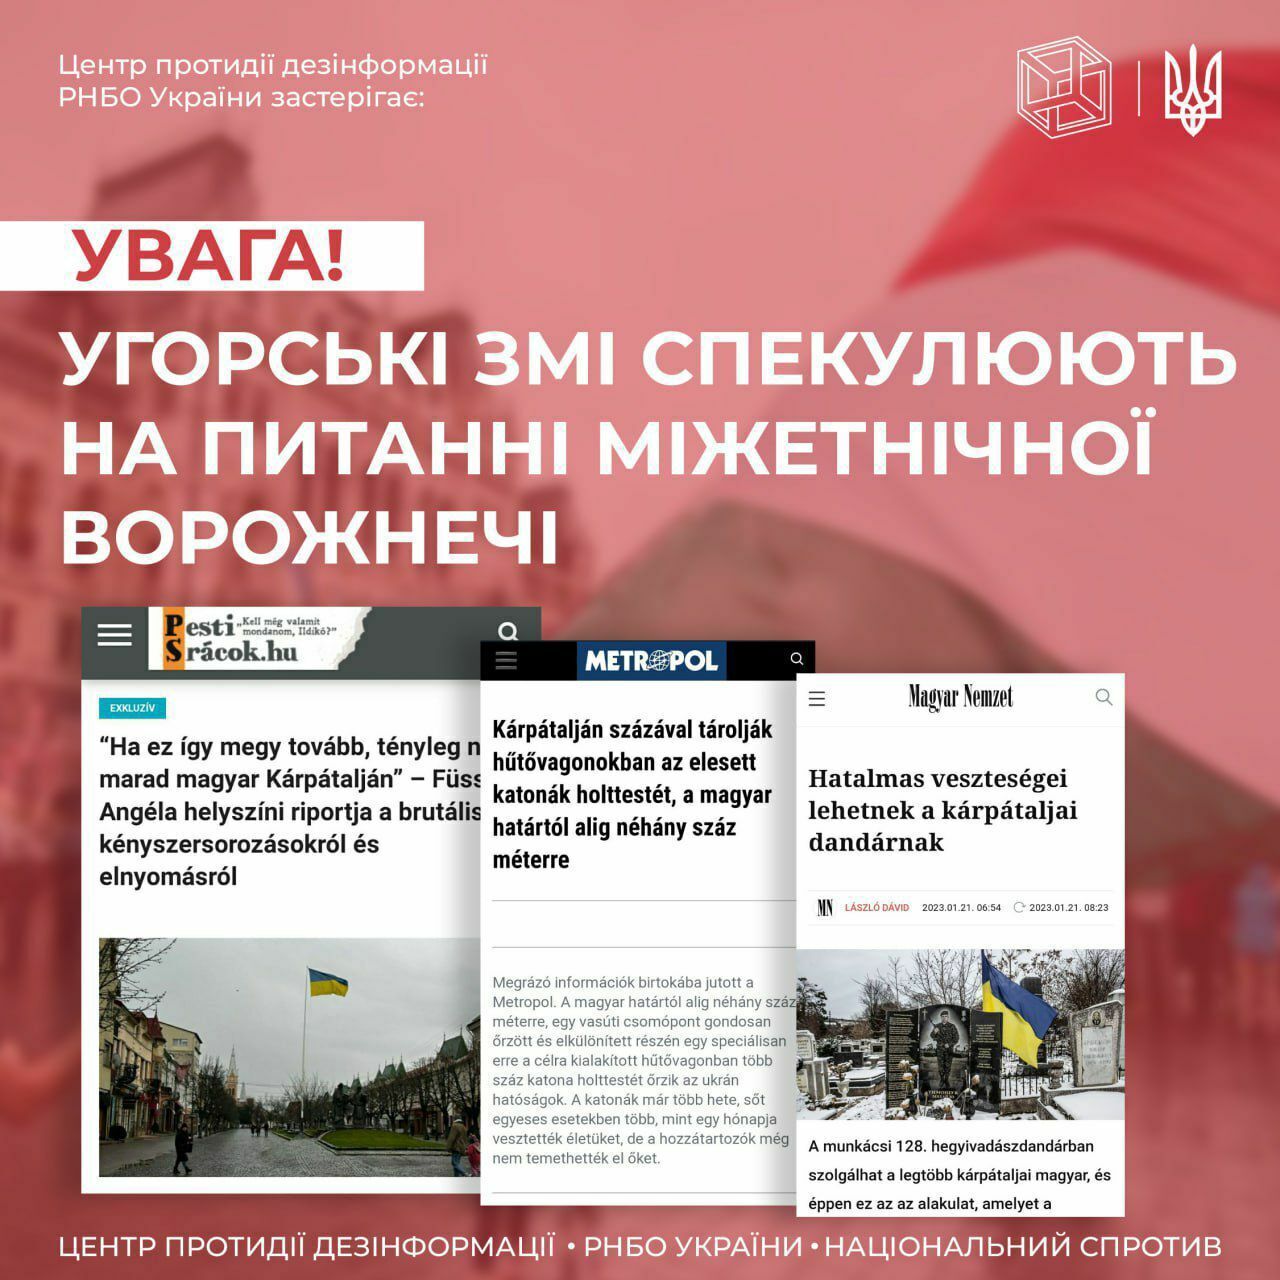 В Венгрии публикуют фейки об Украине